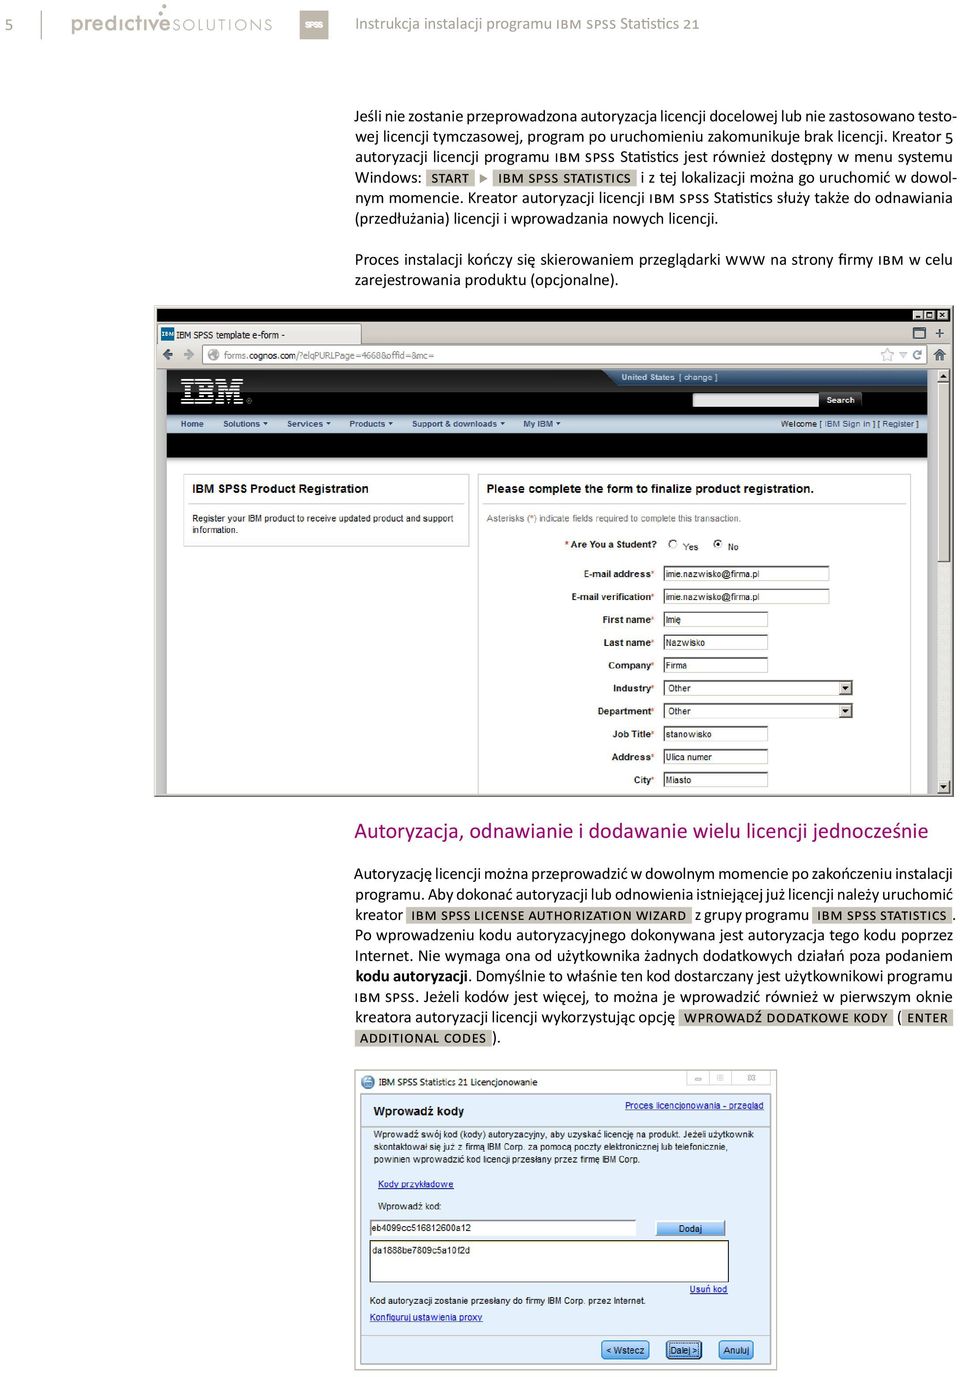 Kreator 5 autoryzacji licencji programu IBM SPSS Statistics jest również dostępny w menu systemu Windows: [START] u [IBM SPSS STATISTICS] i z tej lokalizacji można go uruchomić w dowolnym momencie.